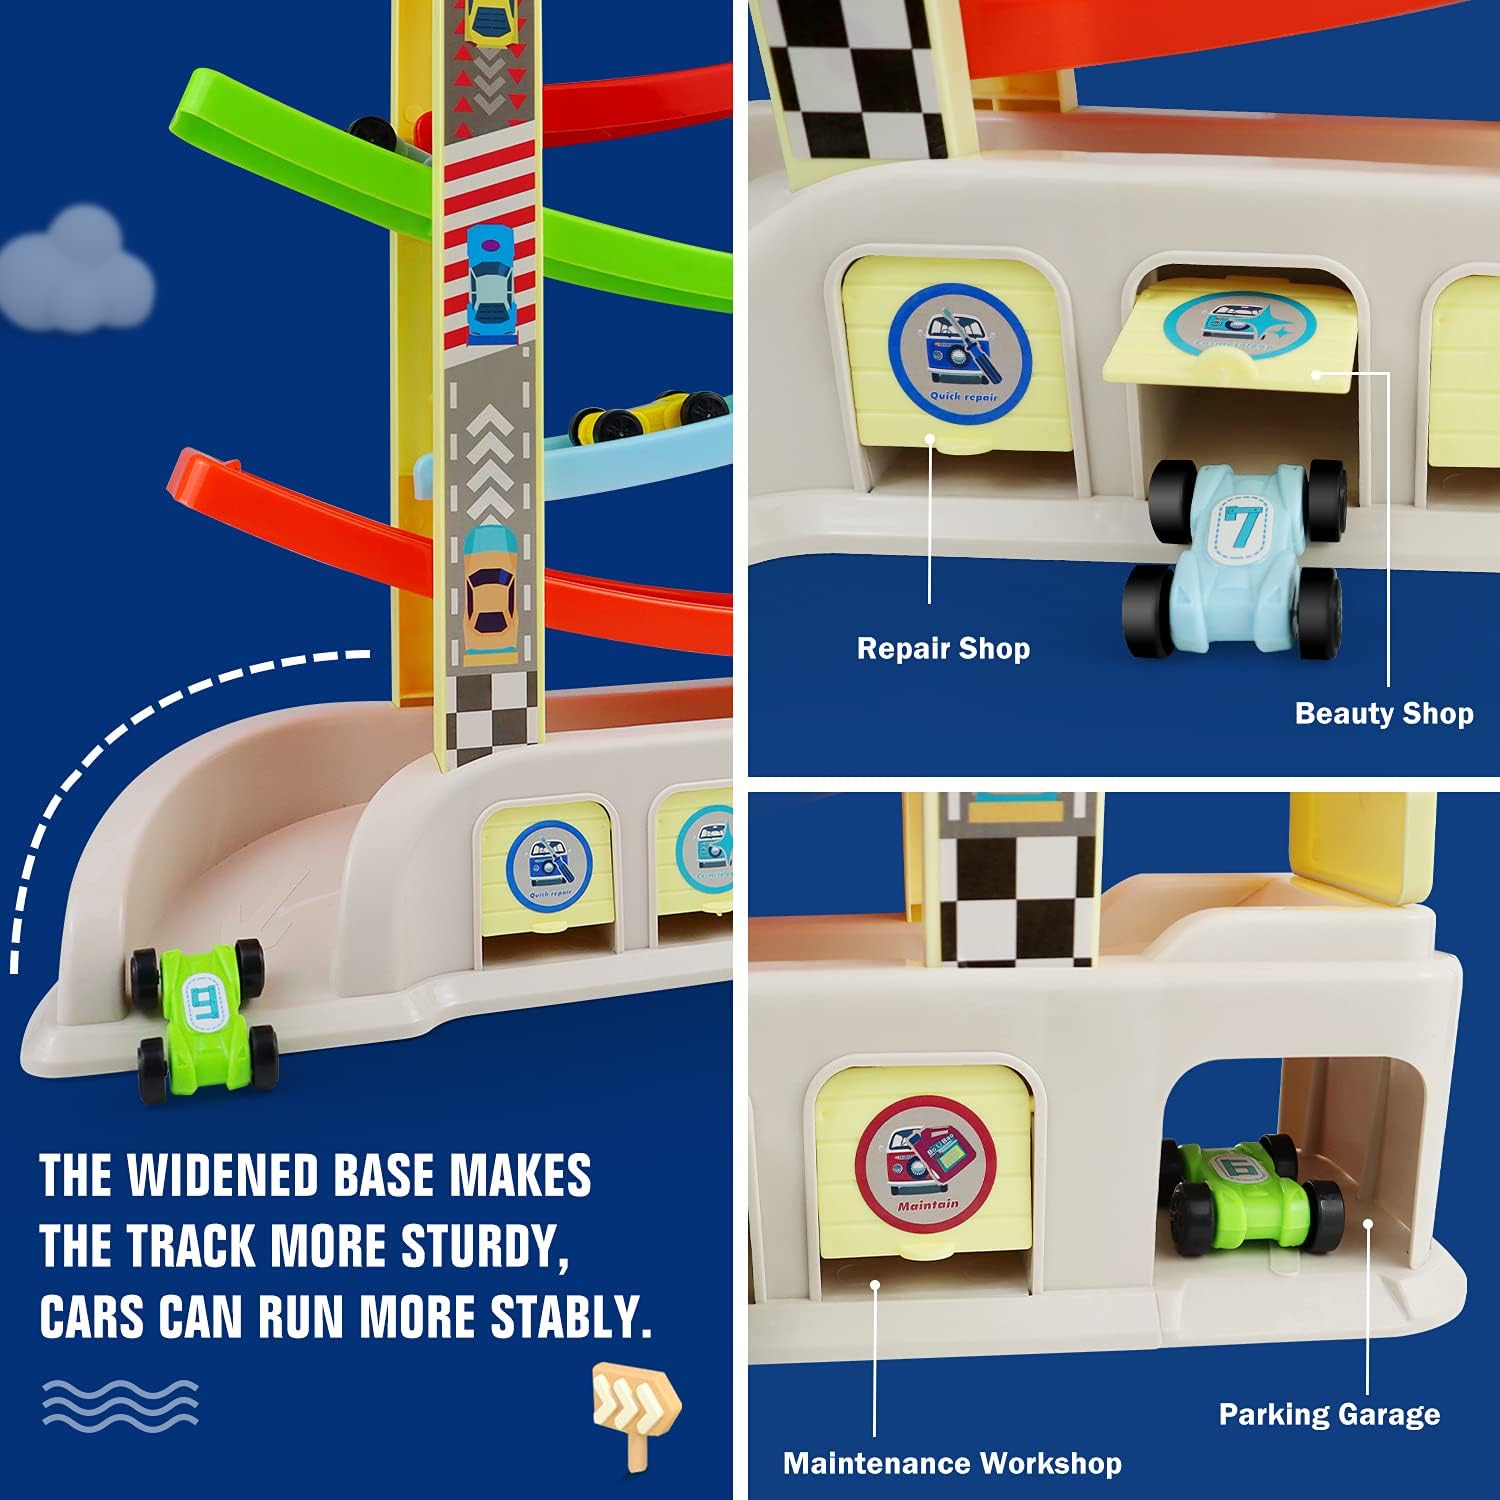 Montessori Toys Car Ramp Toys